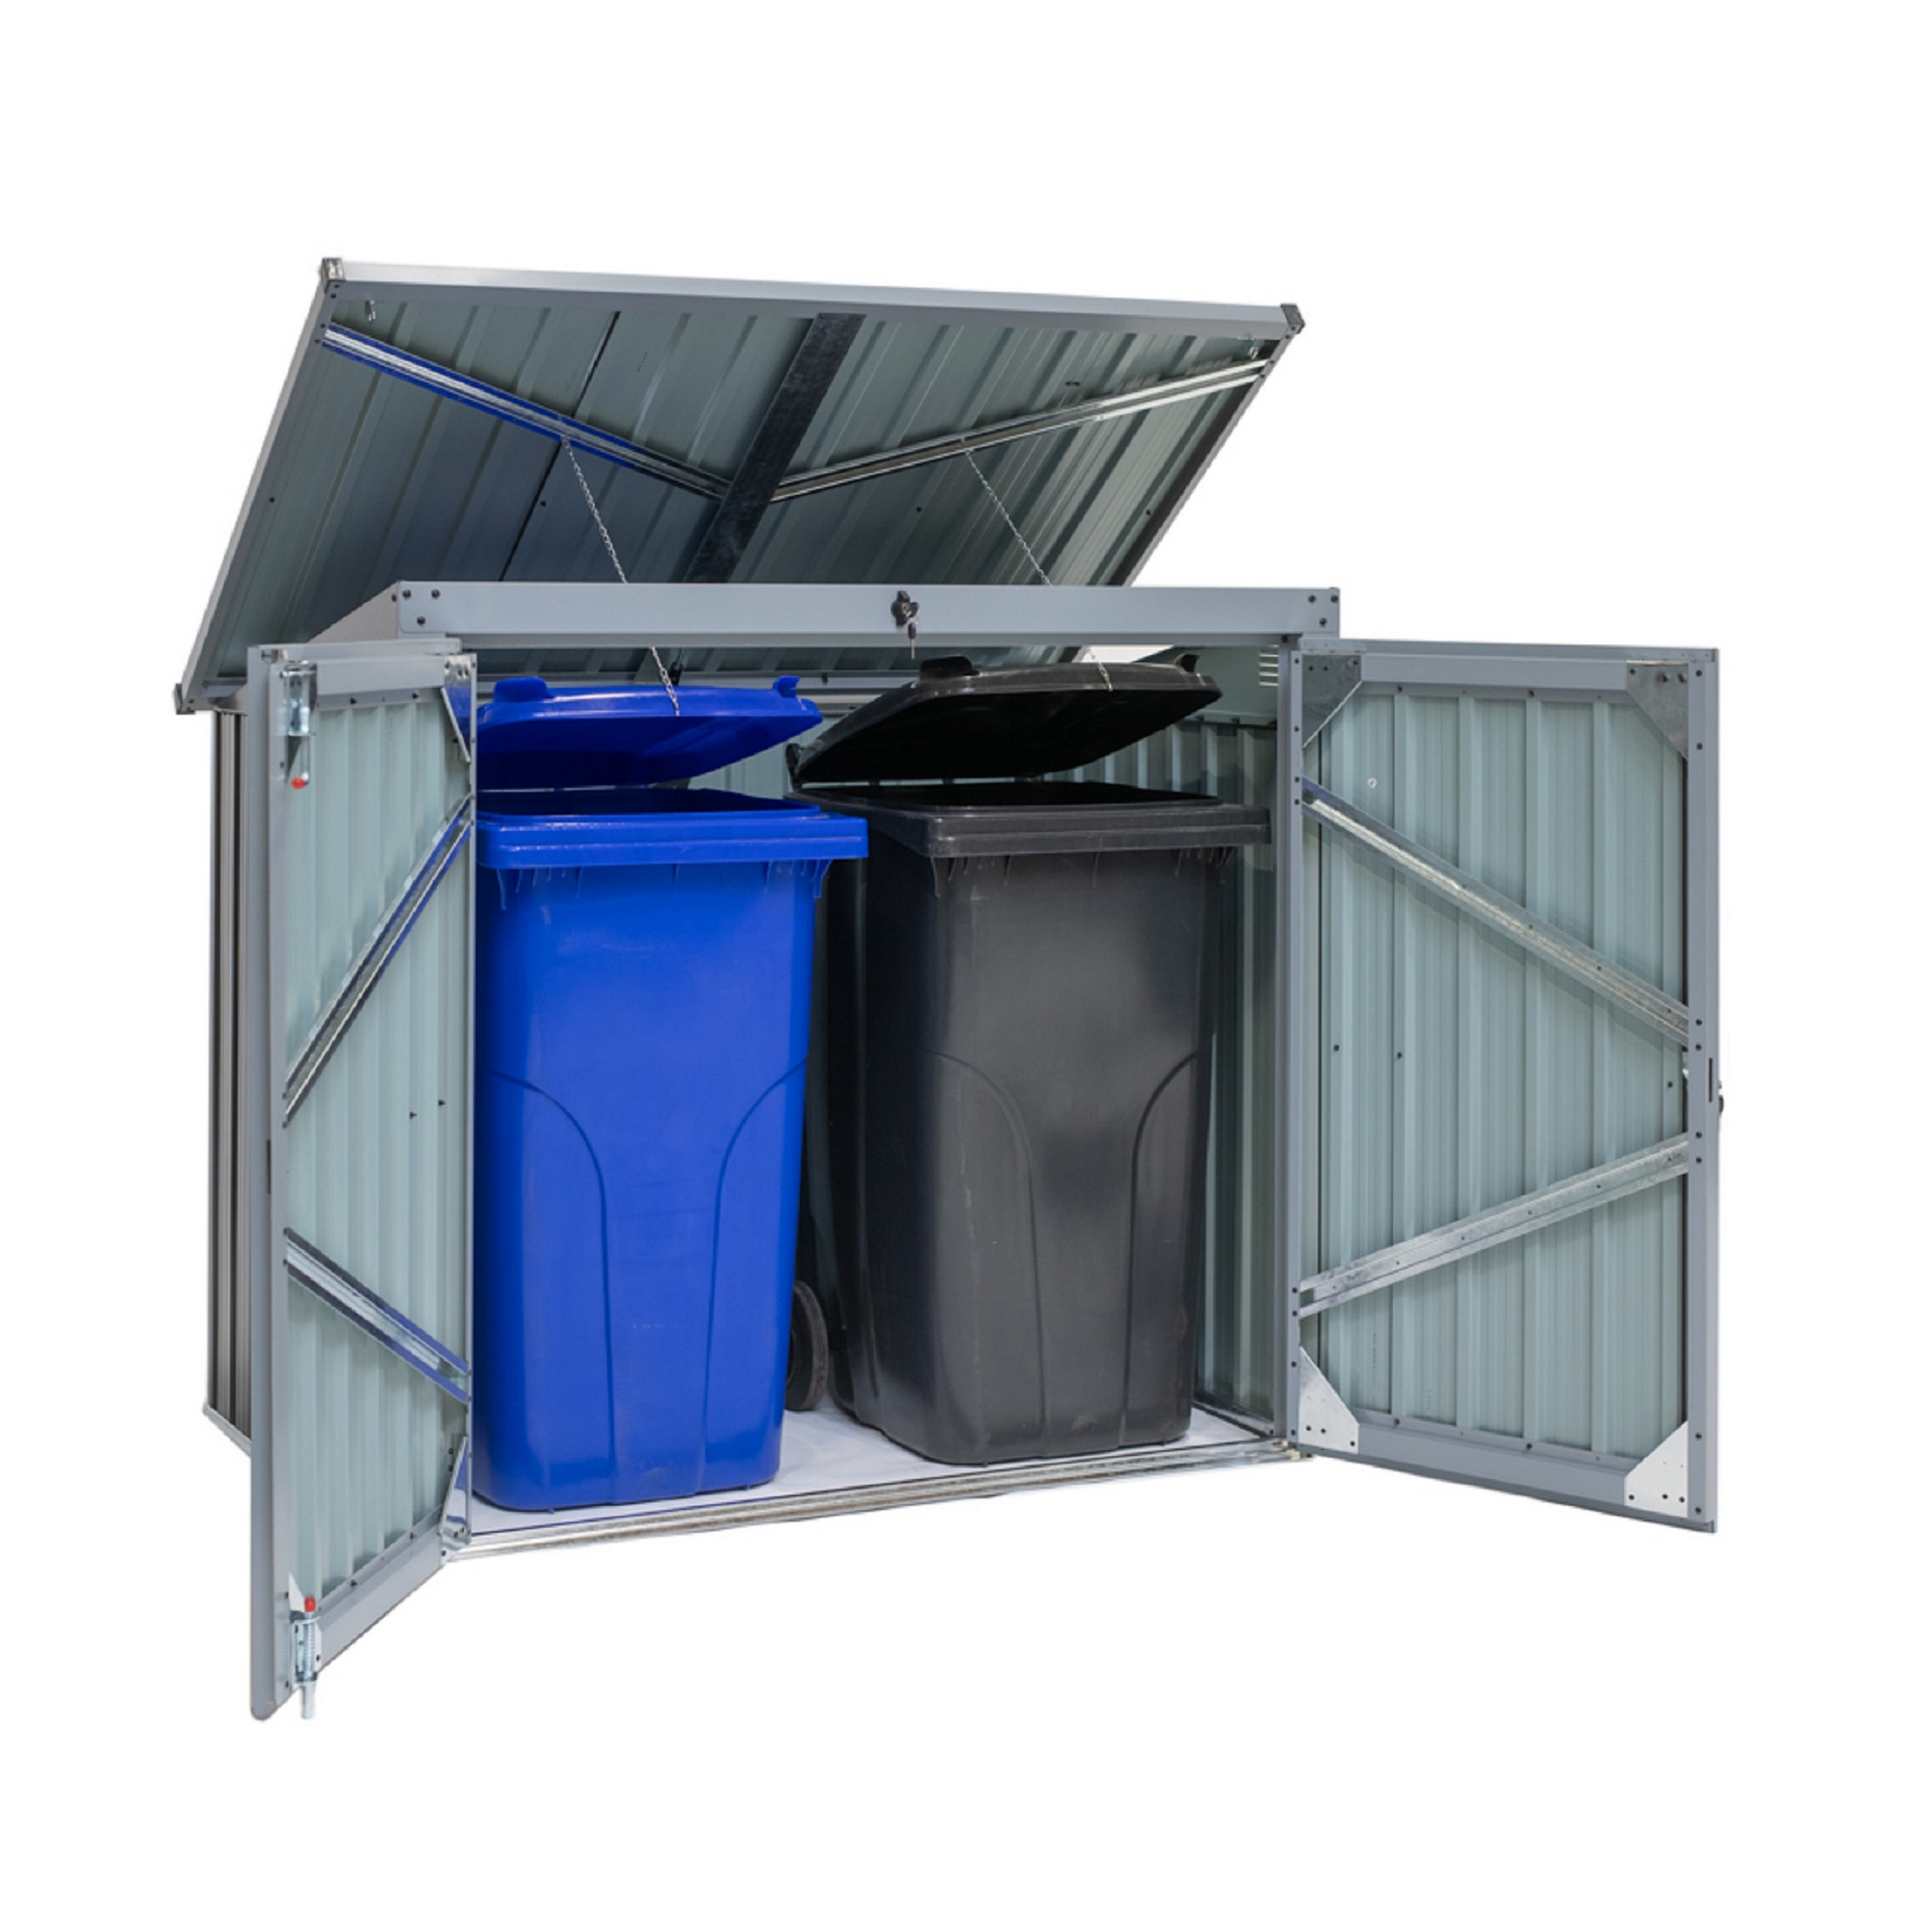 Mülltonnen- und Gerätebox anthrazit Stahl 101 x 158 x 134 cm + product picture